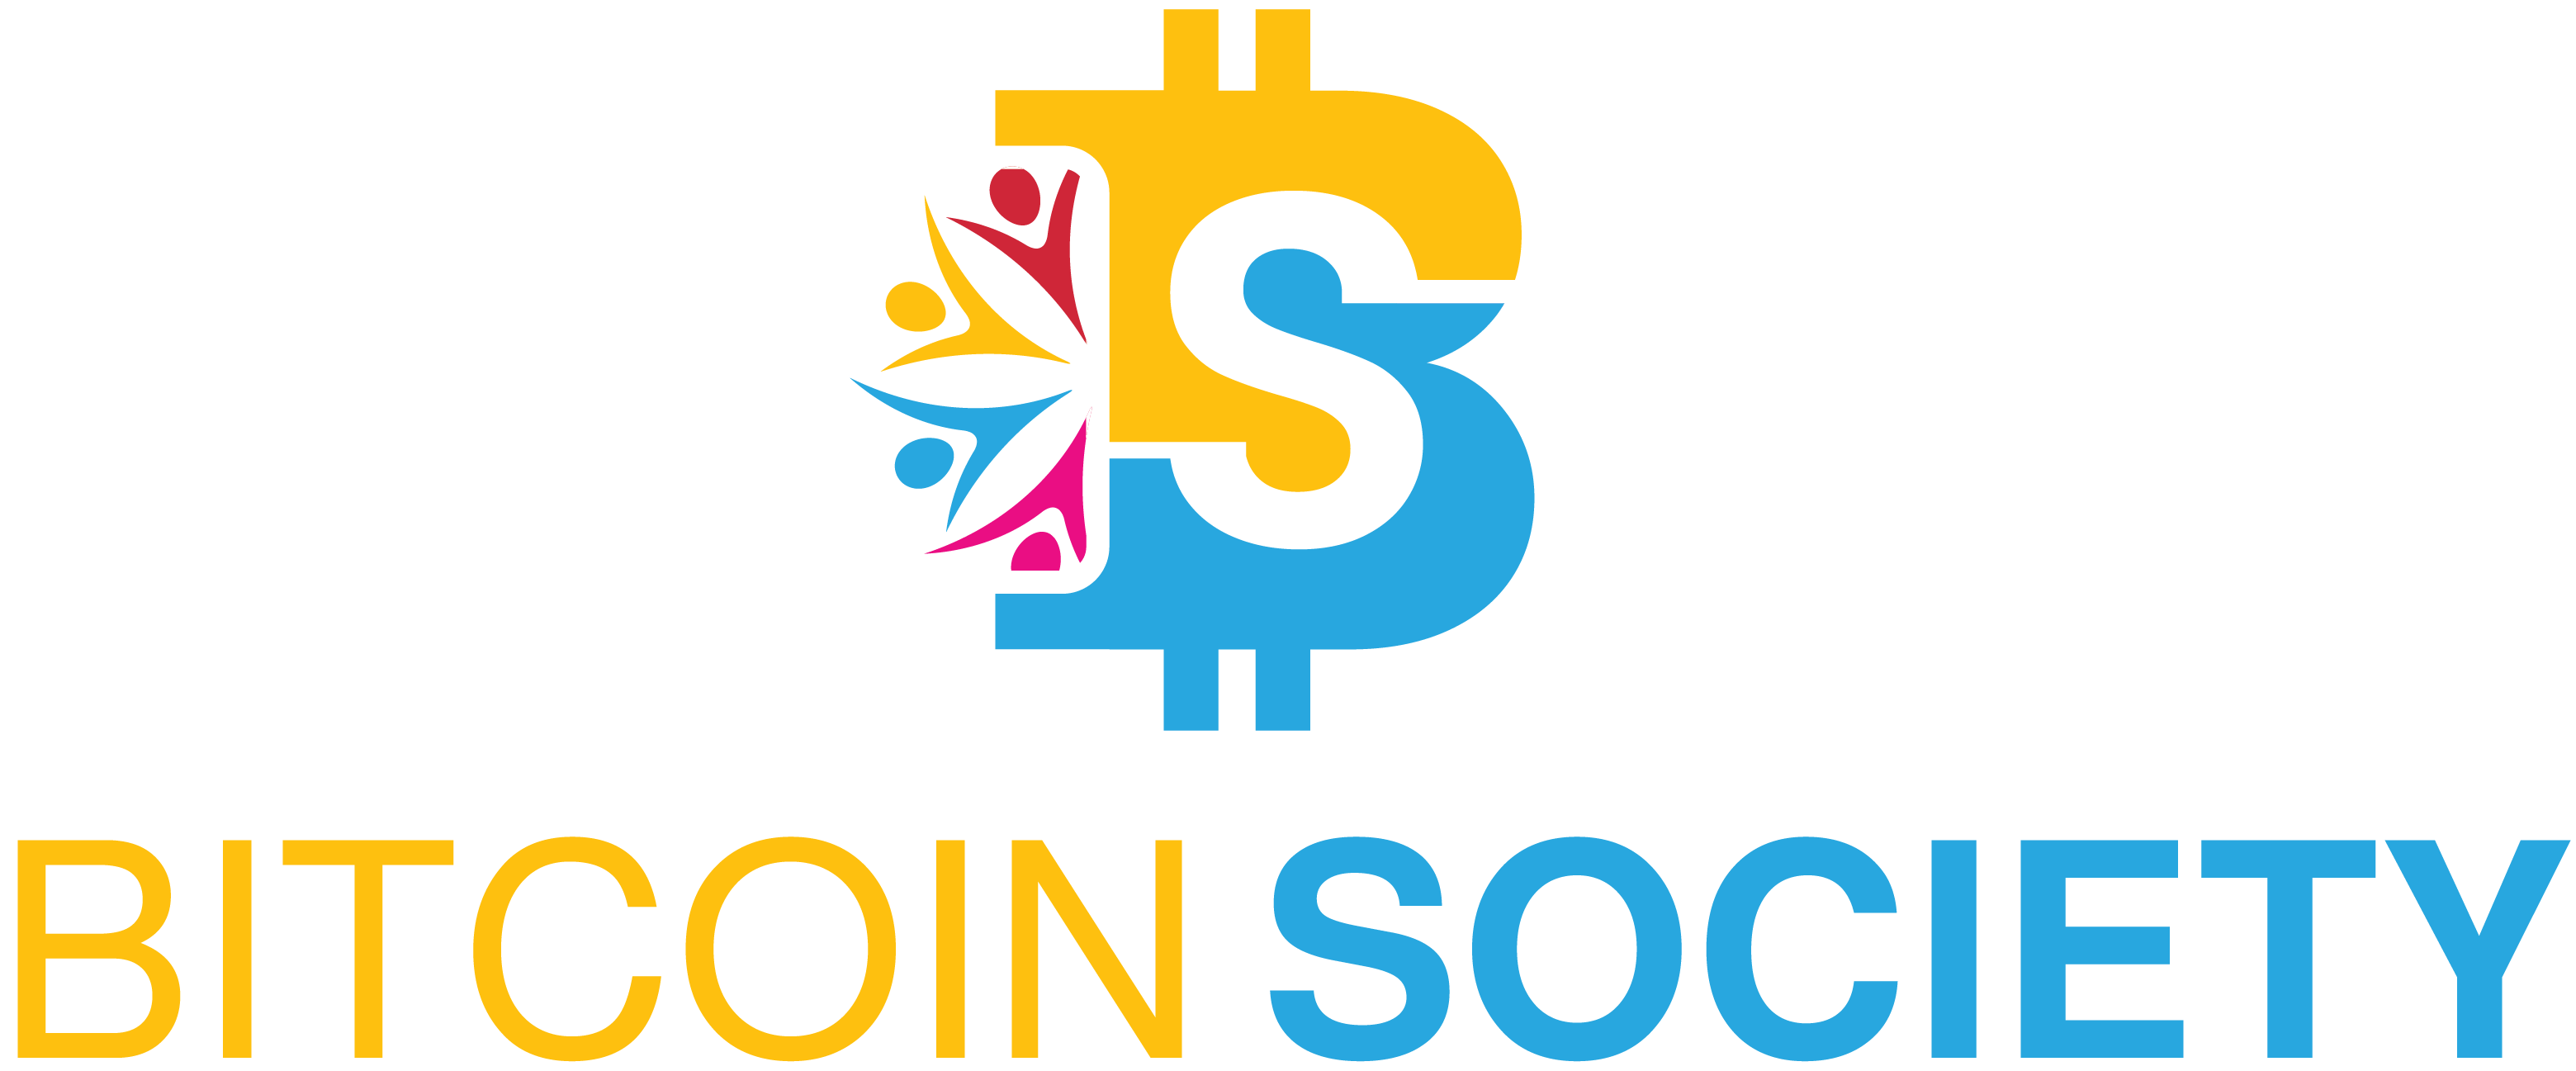 Bitcoin Society - Neem contact op met ons